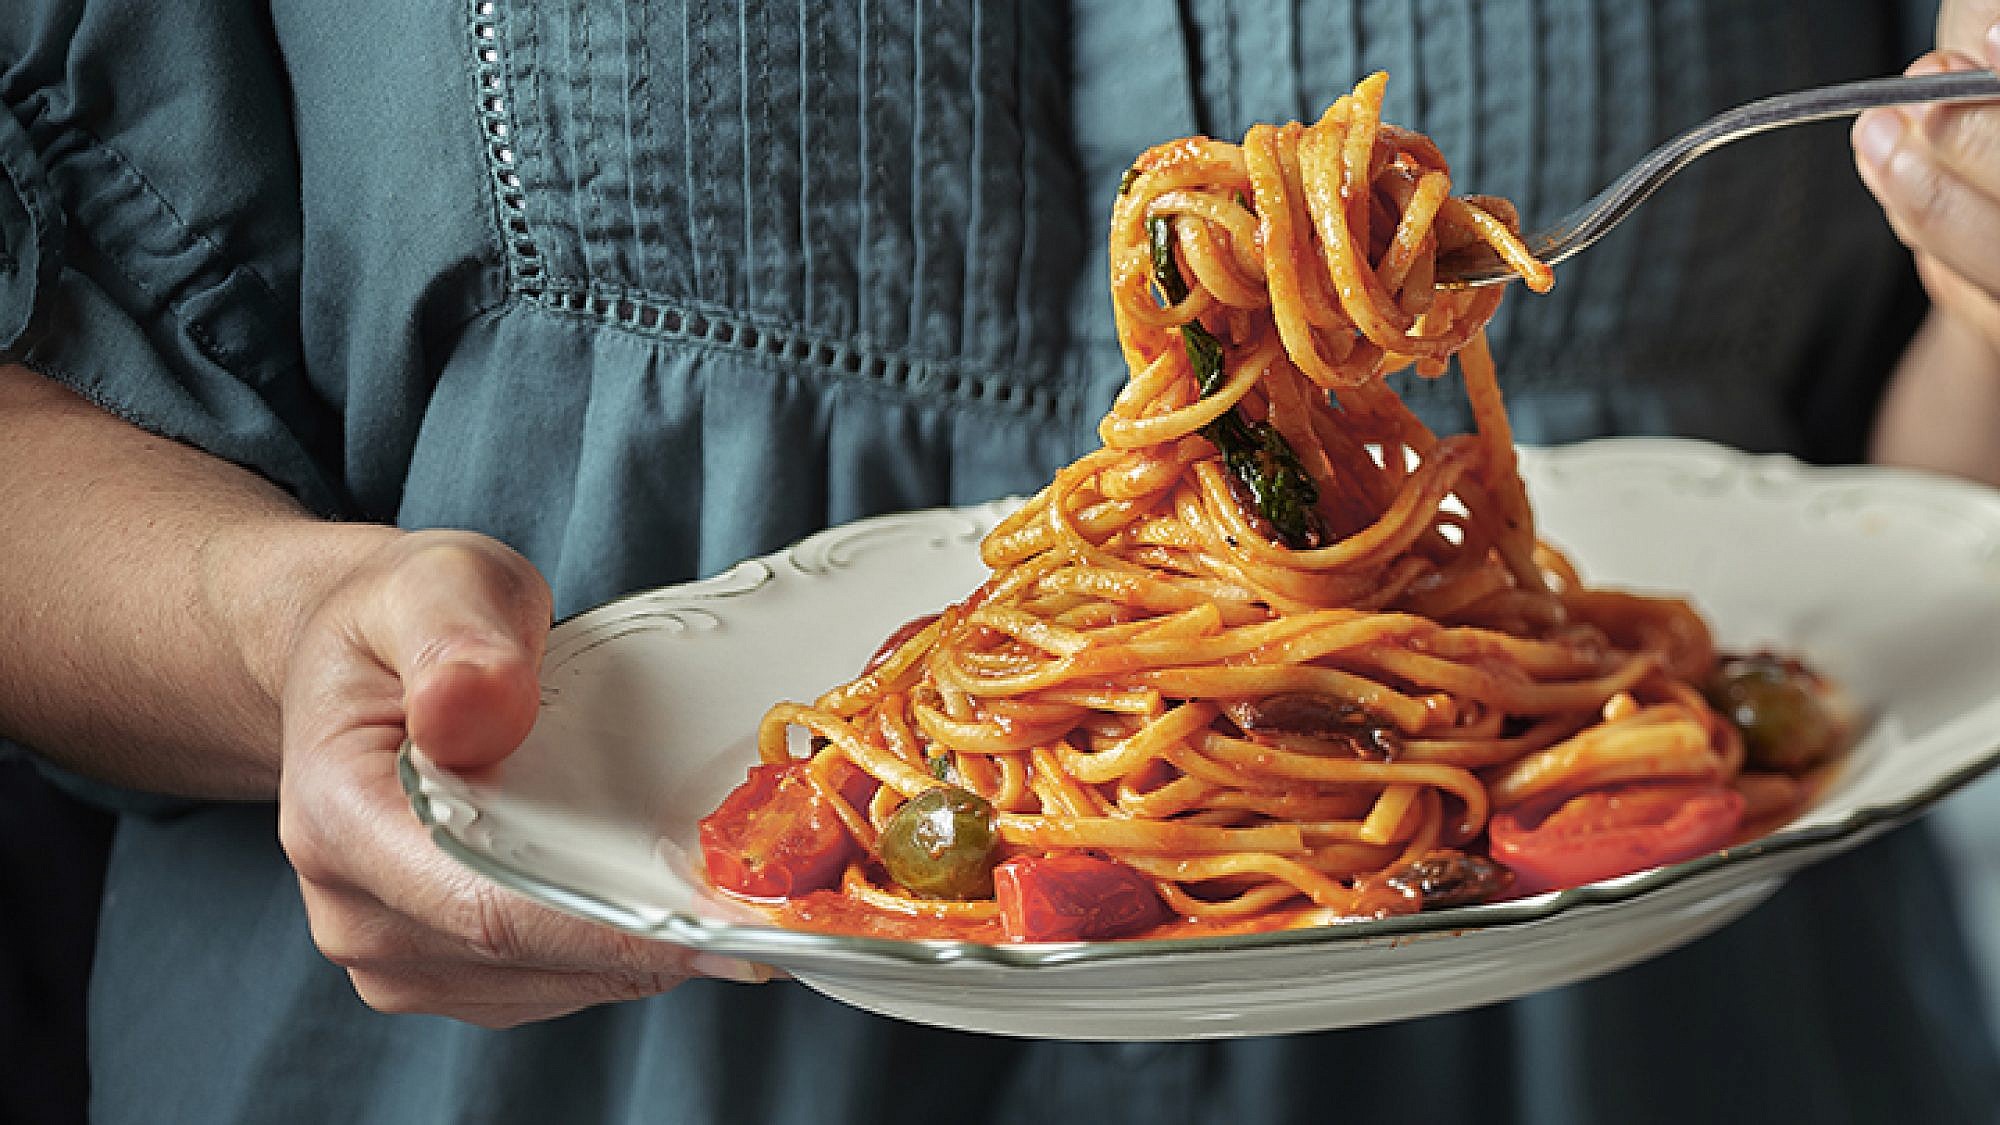 פסטה עם רוטב עגבניות | צילום: אנטולי מיכאלו, סטיילינג ענת לבל